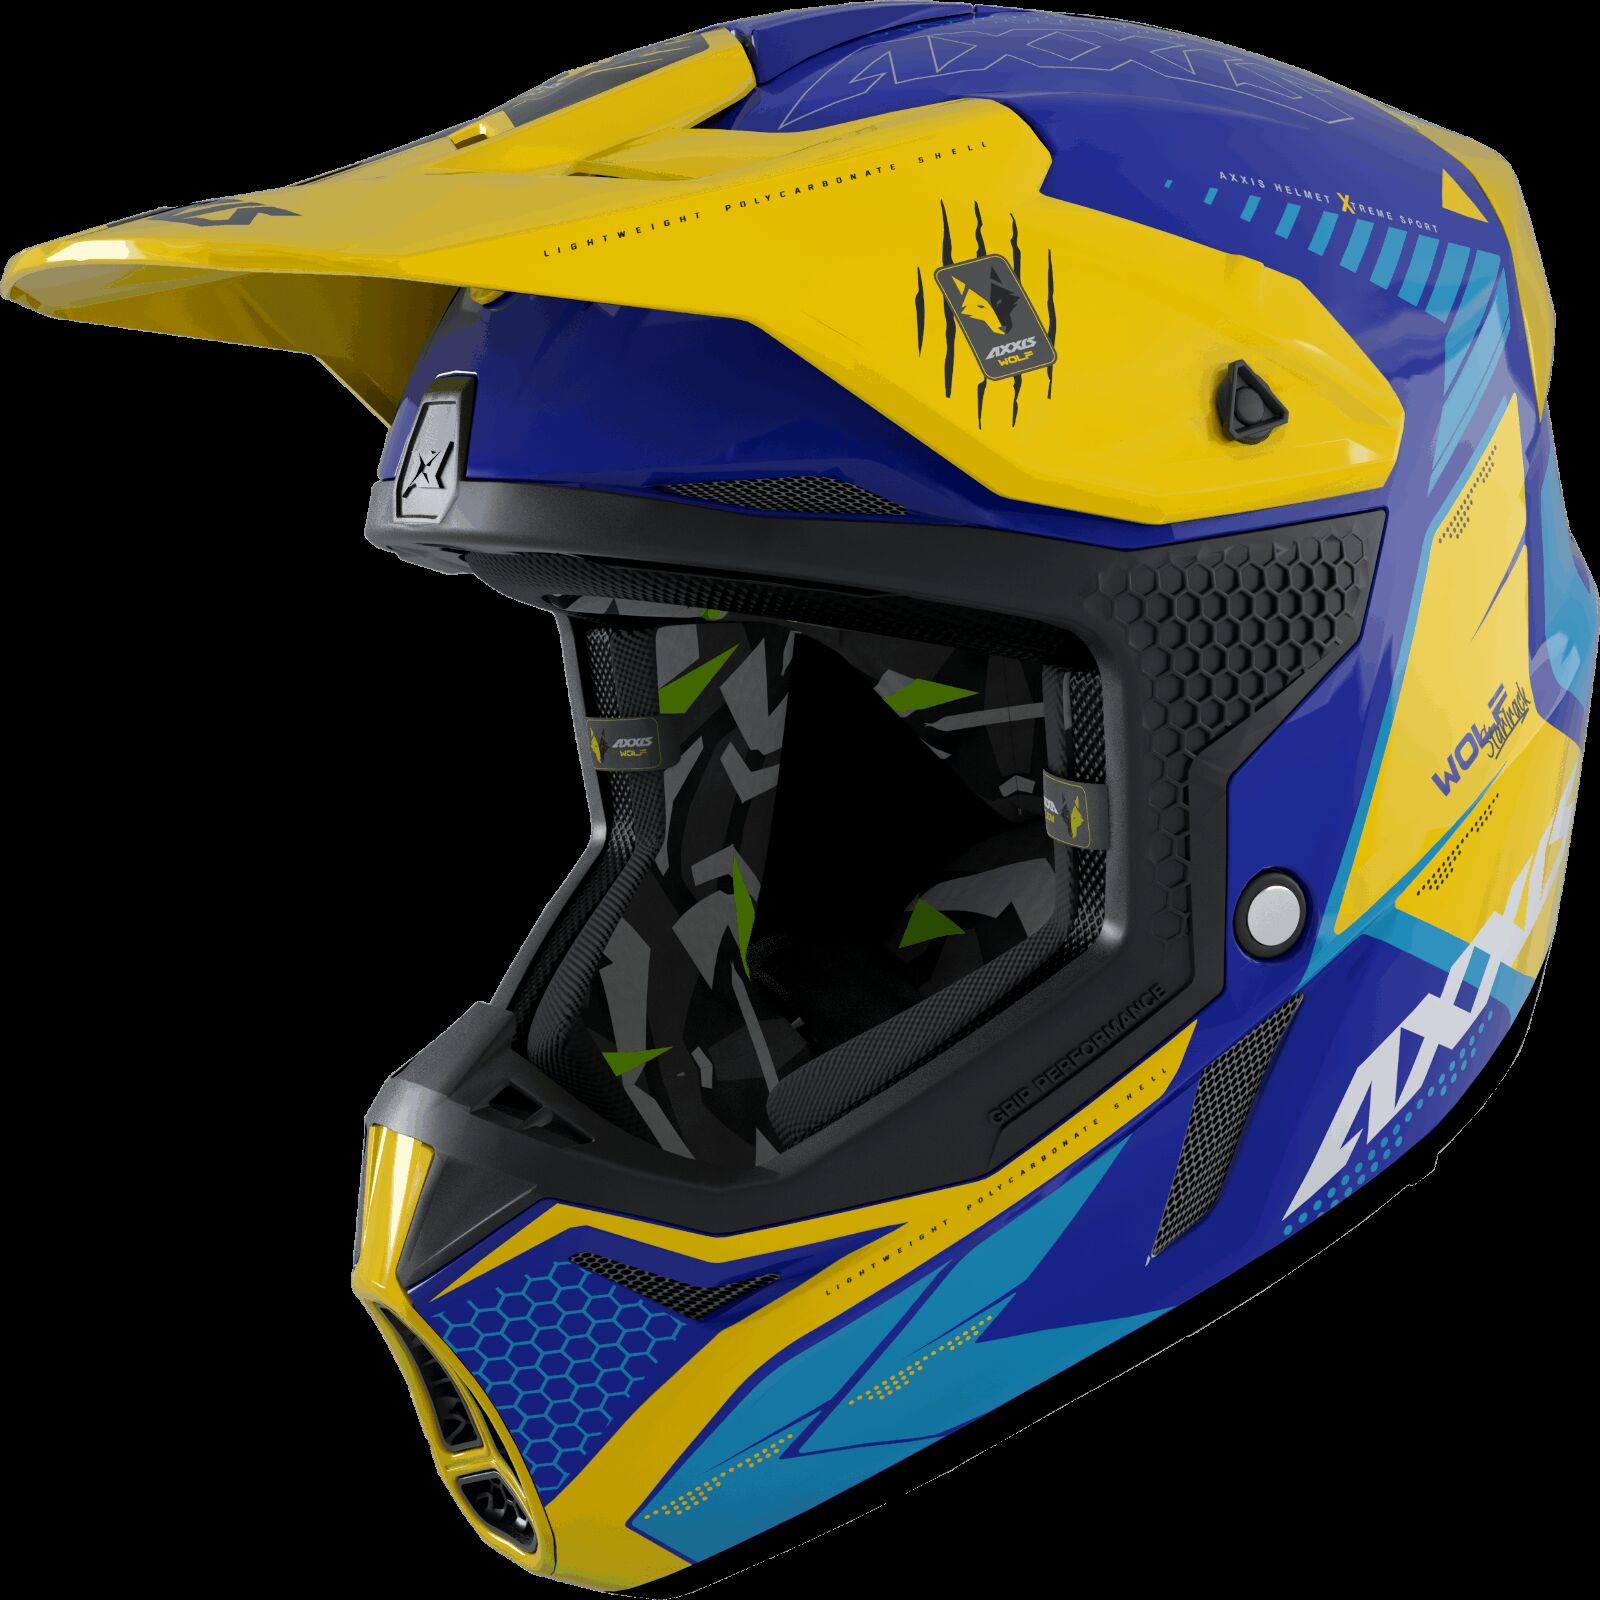 Obrázek produktu Motokrosová helma AXXIS WOLF ABS star track c17 matná modrá XS 425874121733